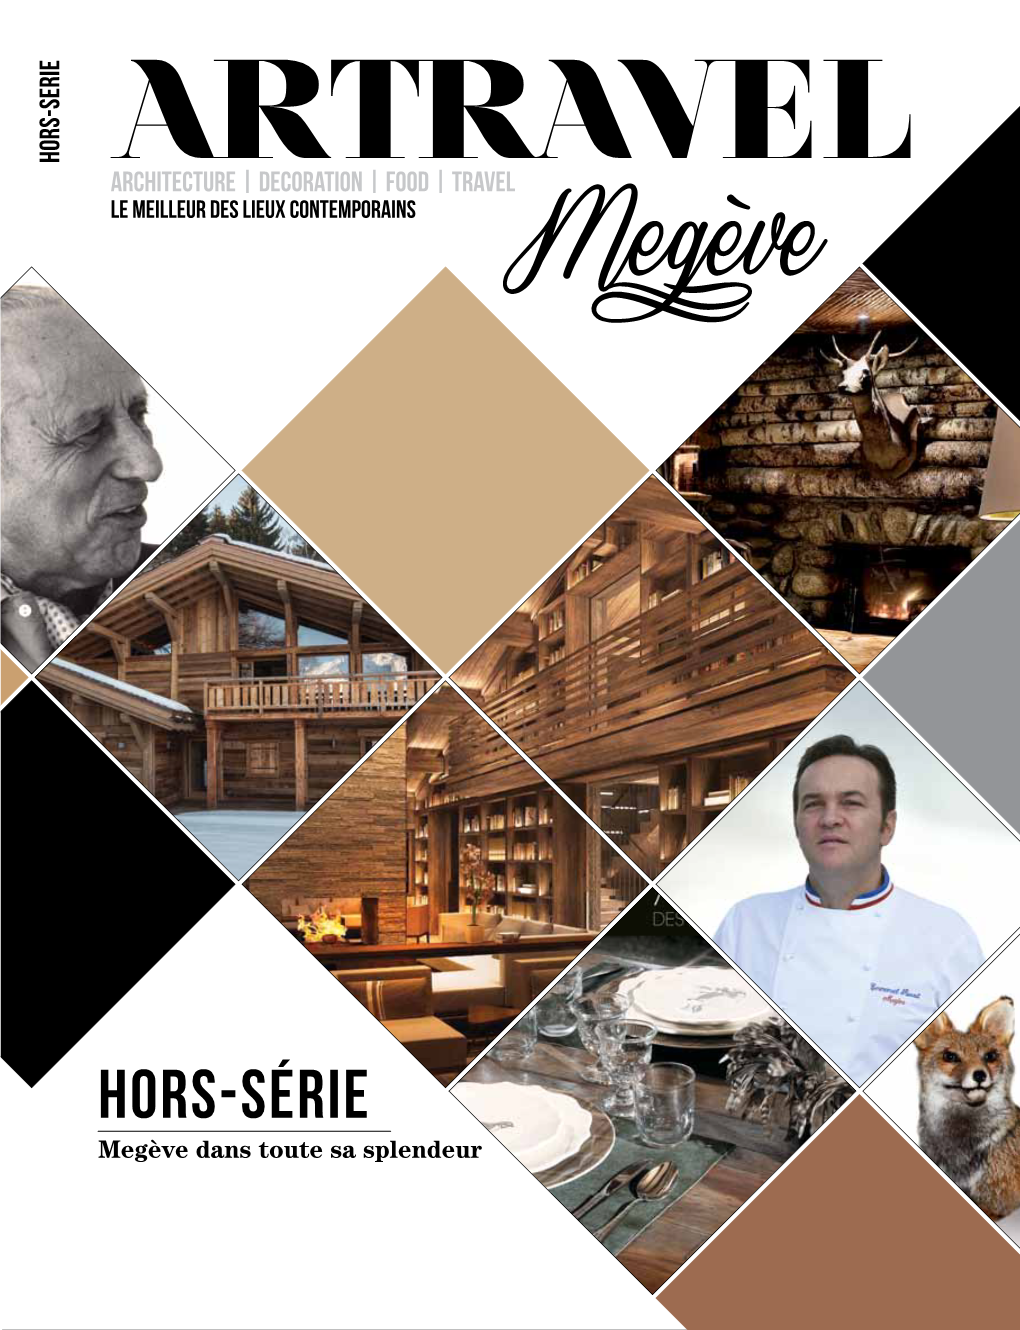 Hors-Série Le Meilleurdeslieuxcontemporains Architecture |Decoration |Foodtravel Rencontre|Emmanuel Renaut